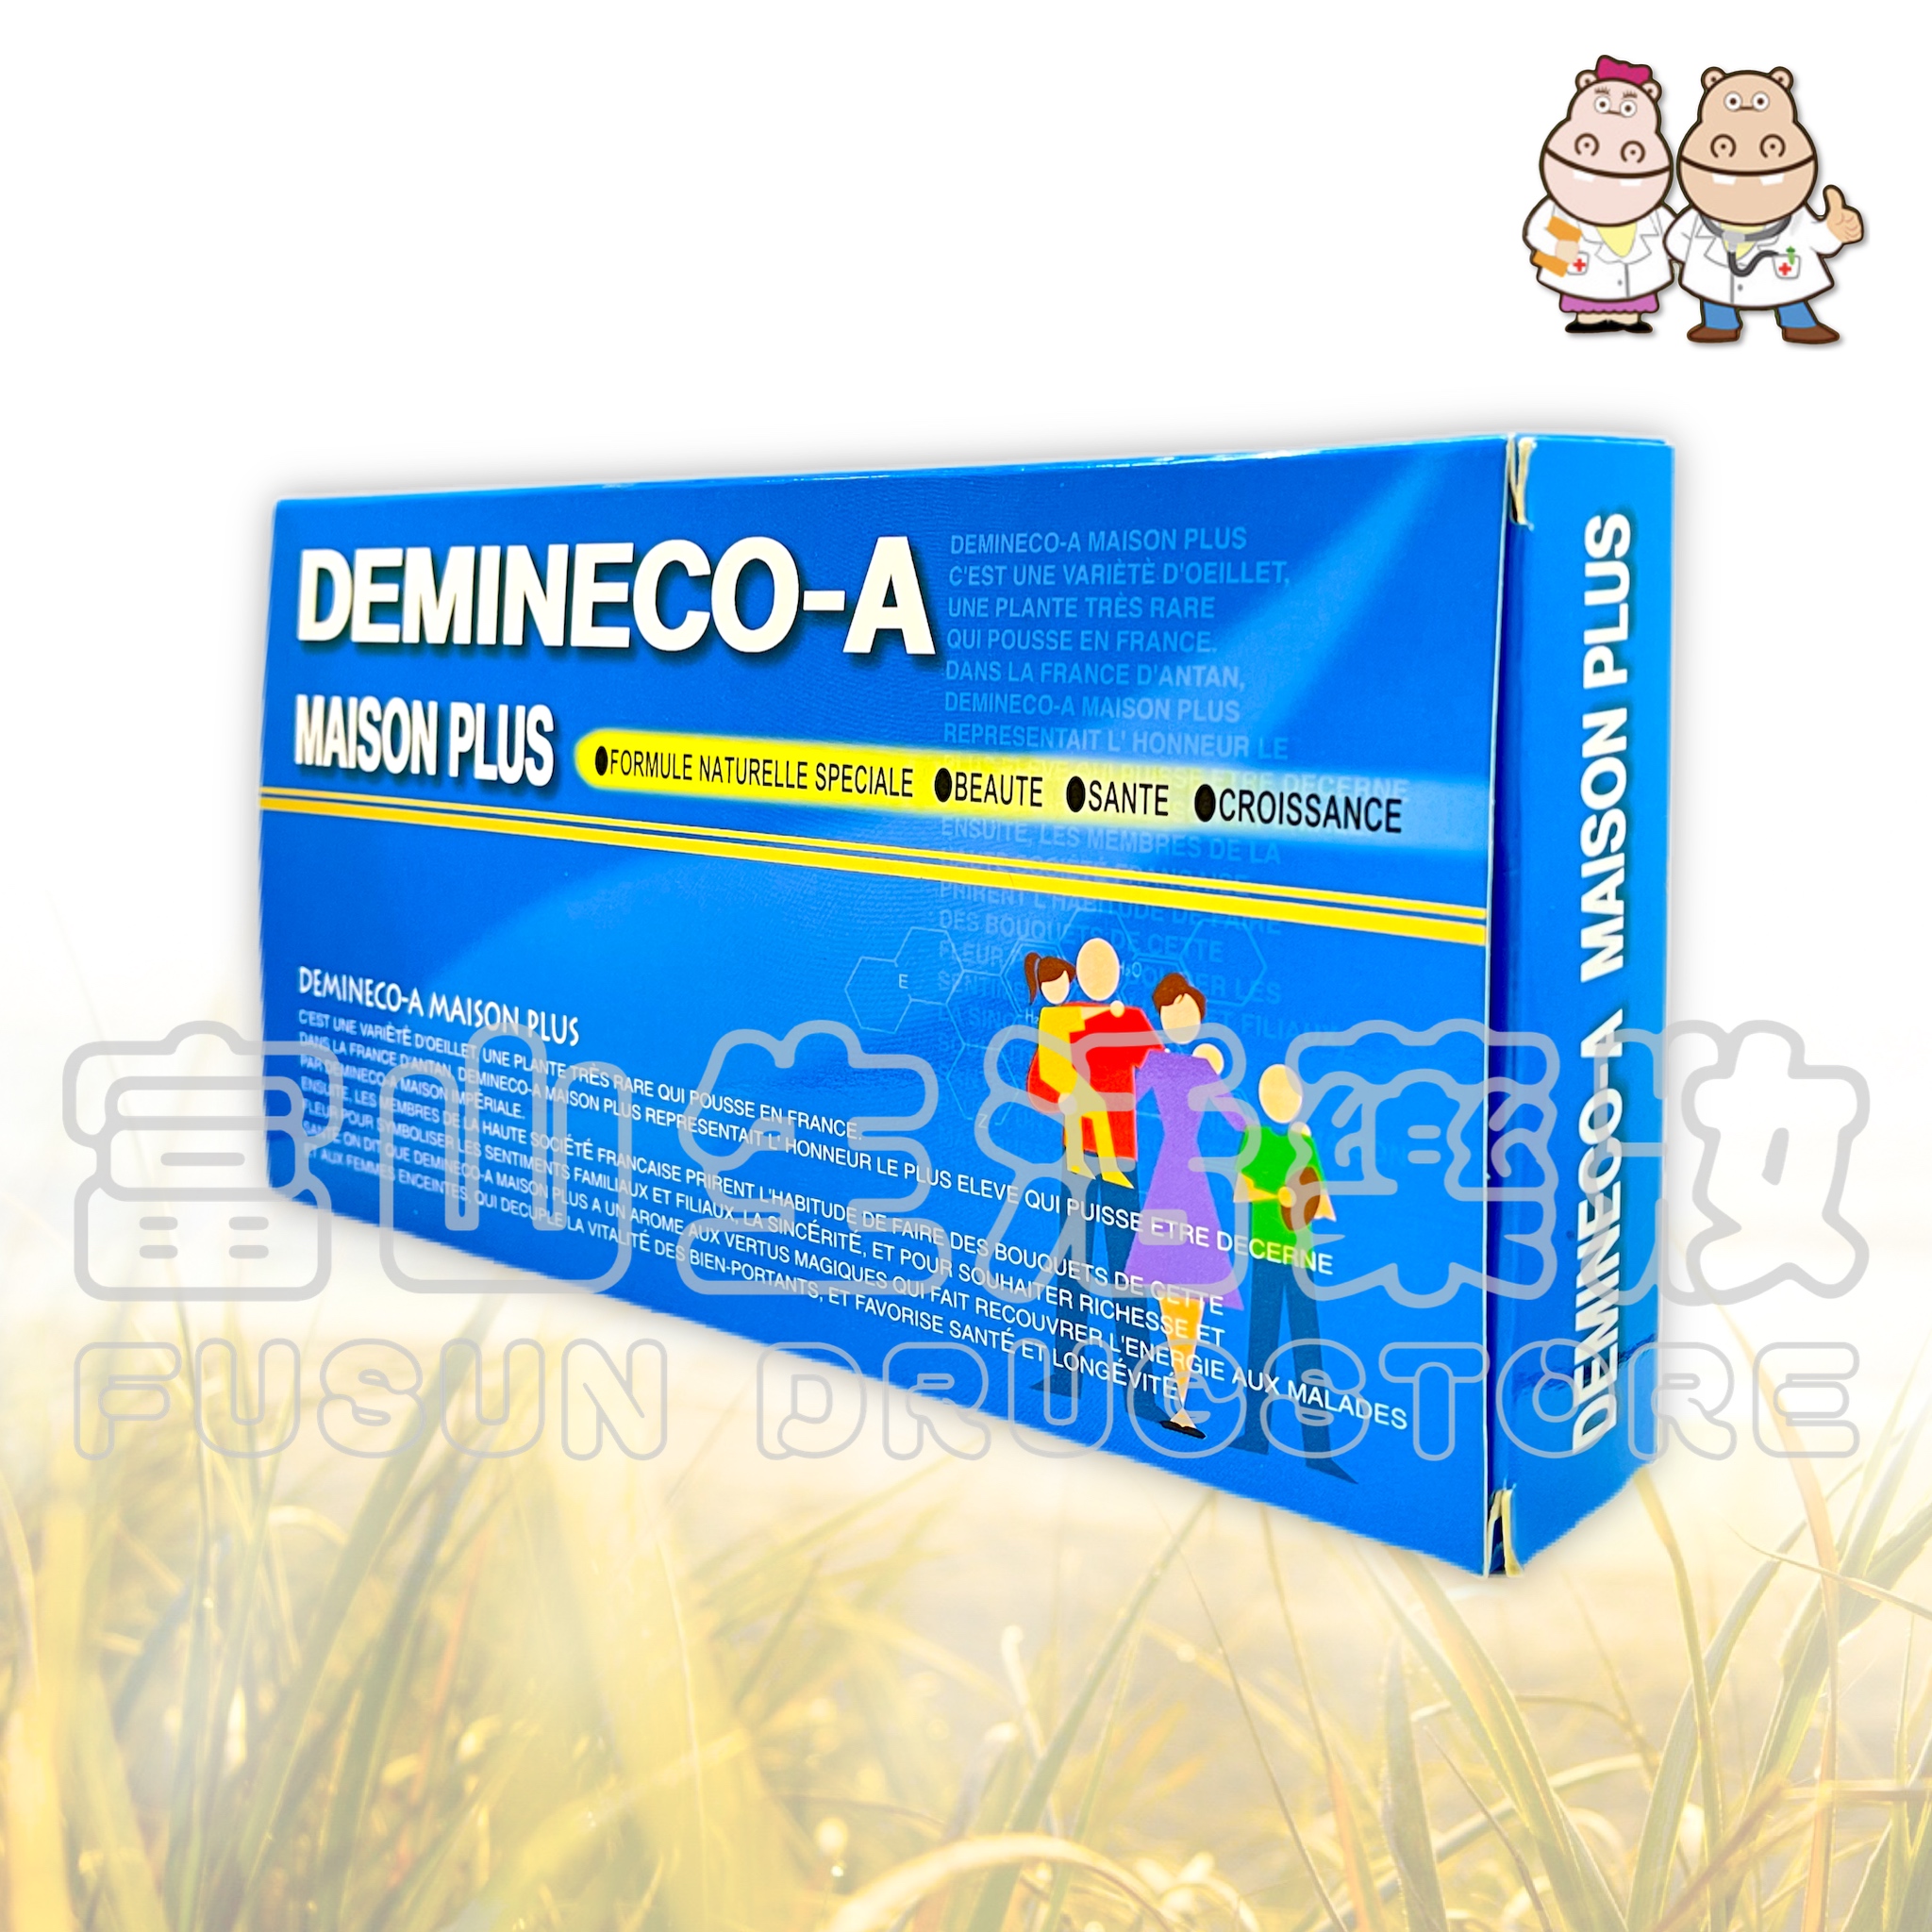 體敏康-A Demineco-A 生理補精 20支【富山】體敏康系列指定產品-任4件75折